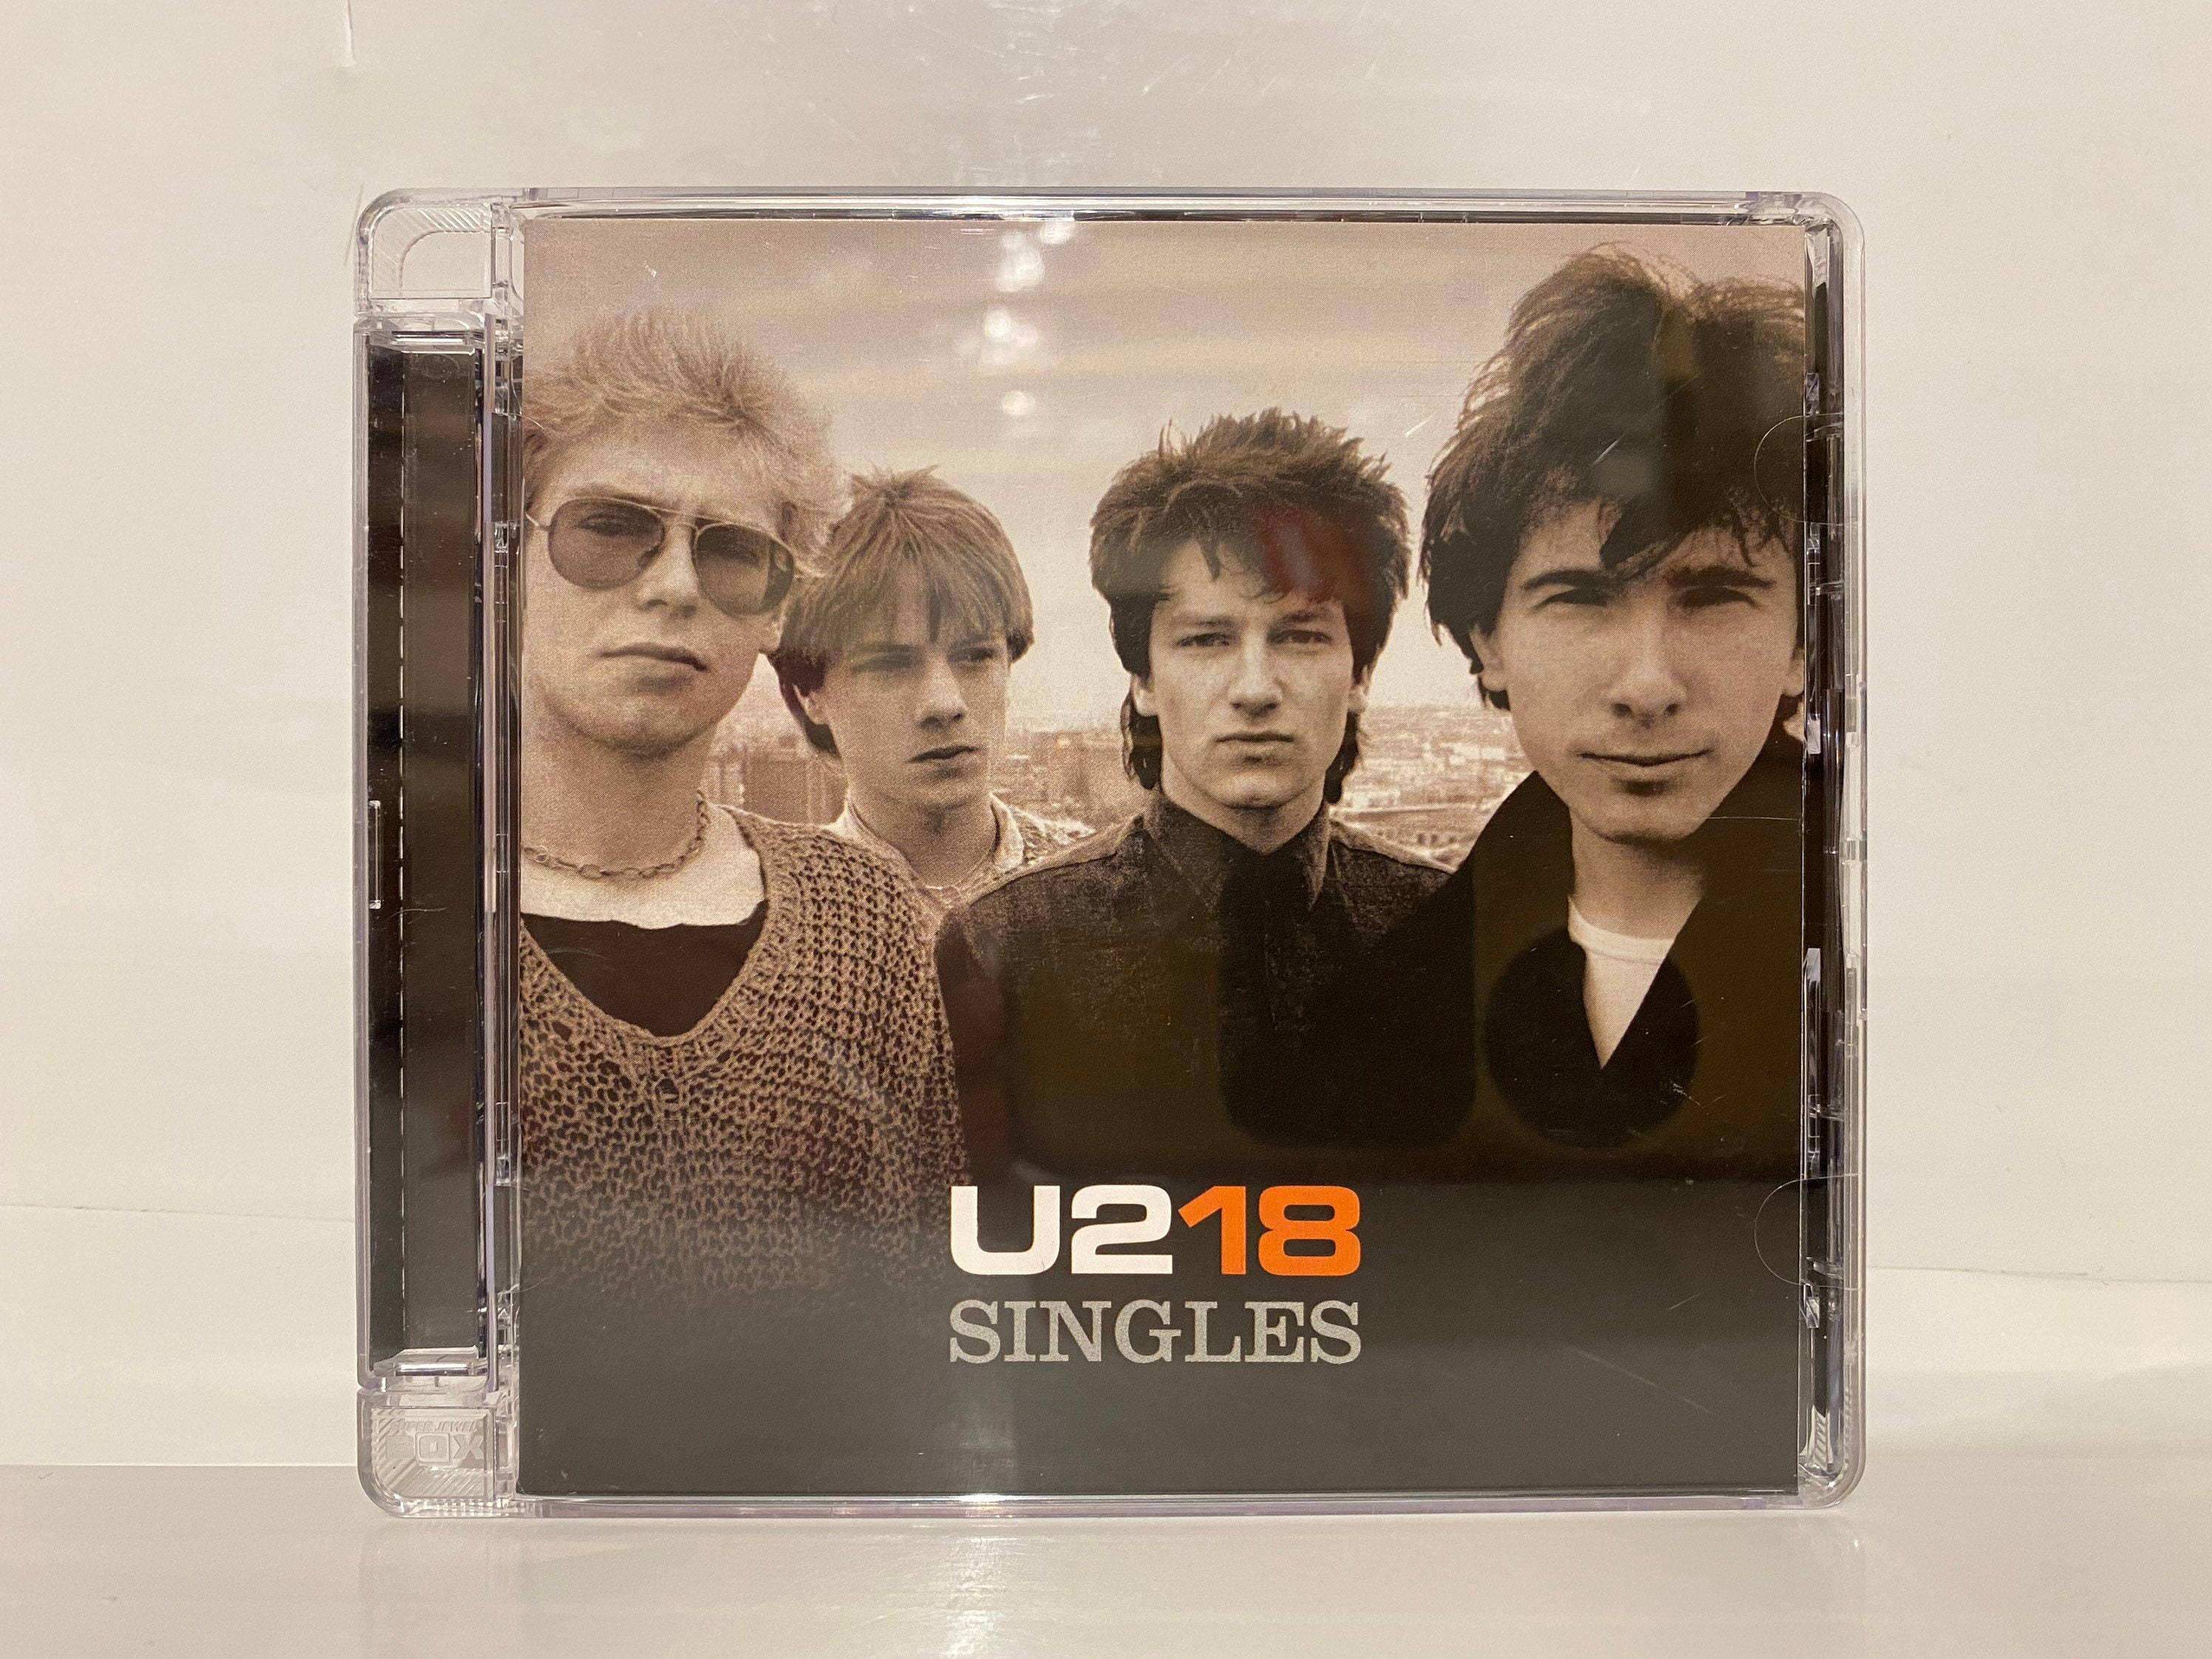 U2 "18 Singles". U2 "18 Singles, CD". Компакт-диск u2 18 Singles. Компакт-диск u2 u218 Singles.